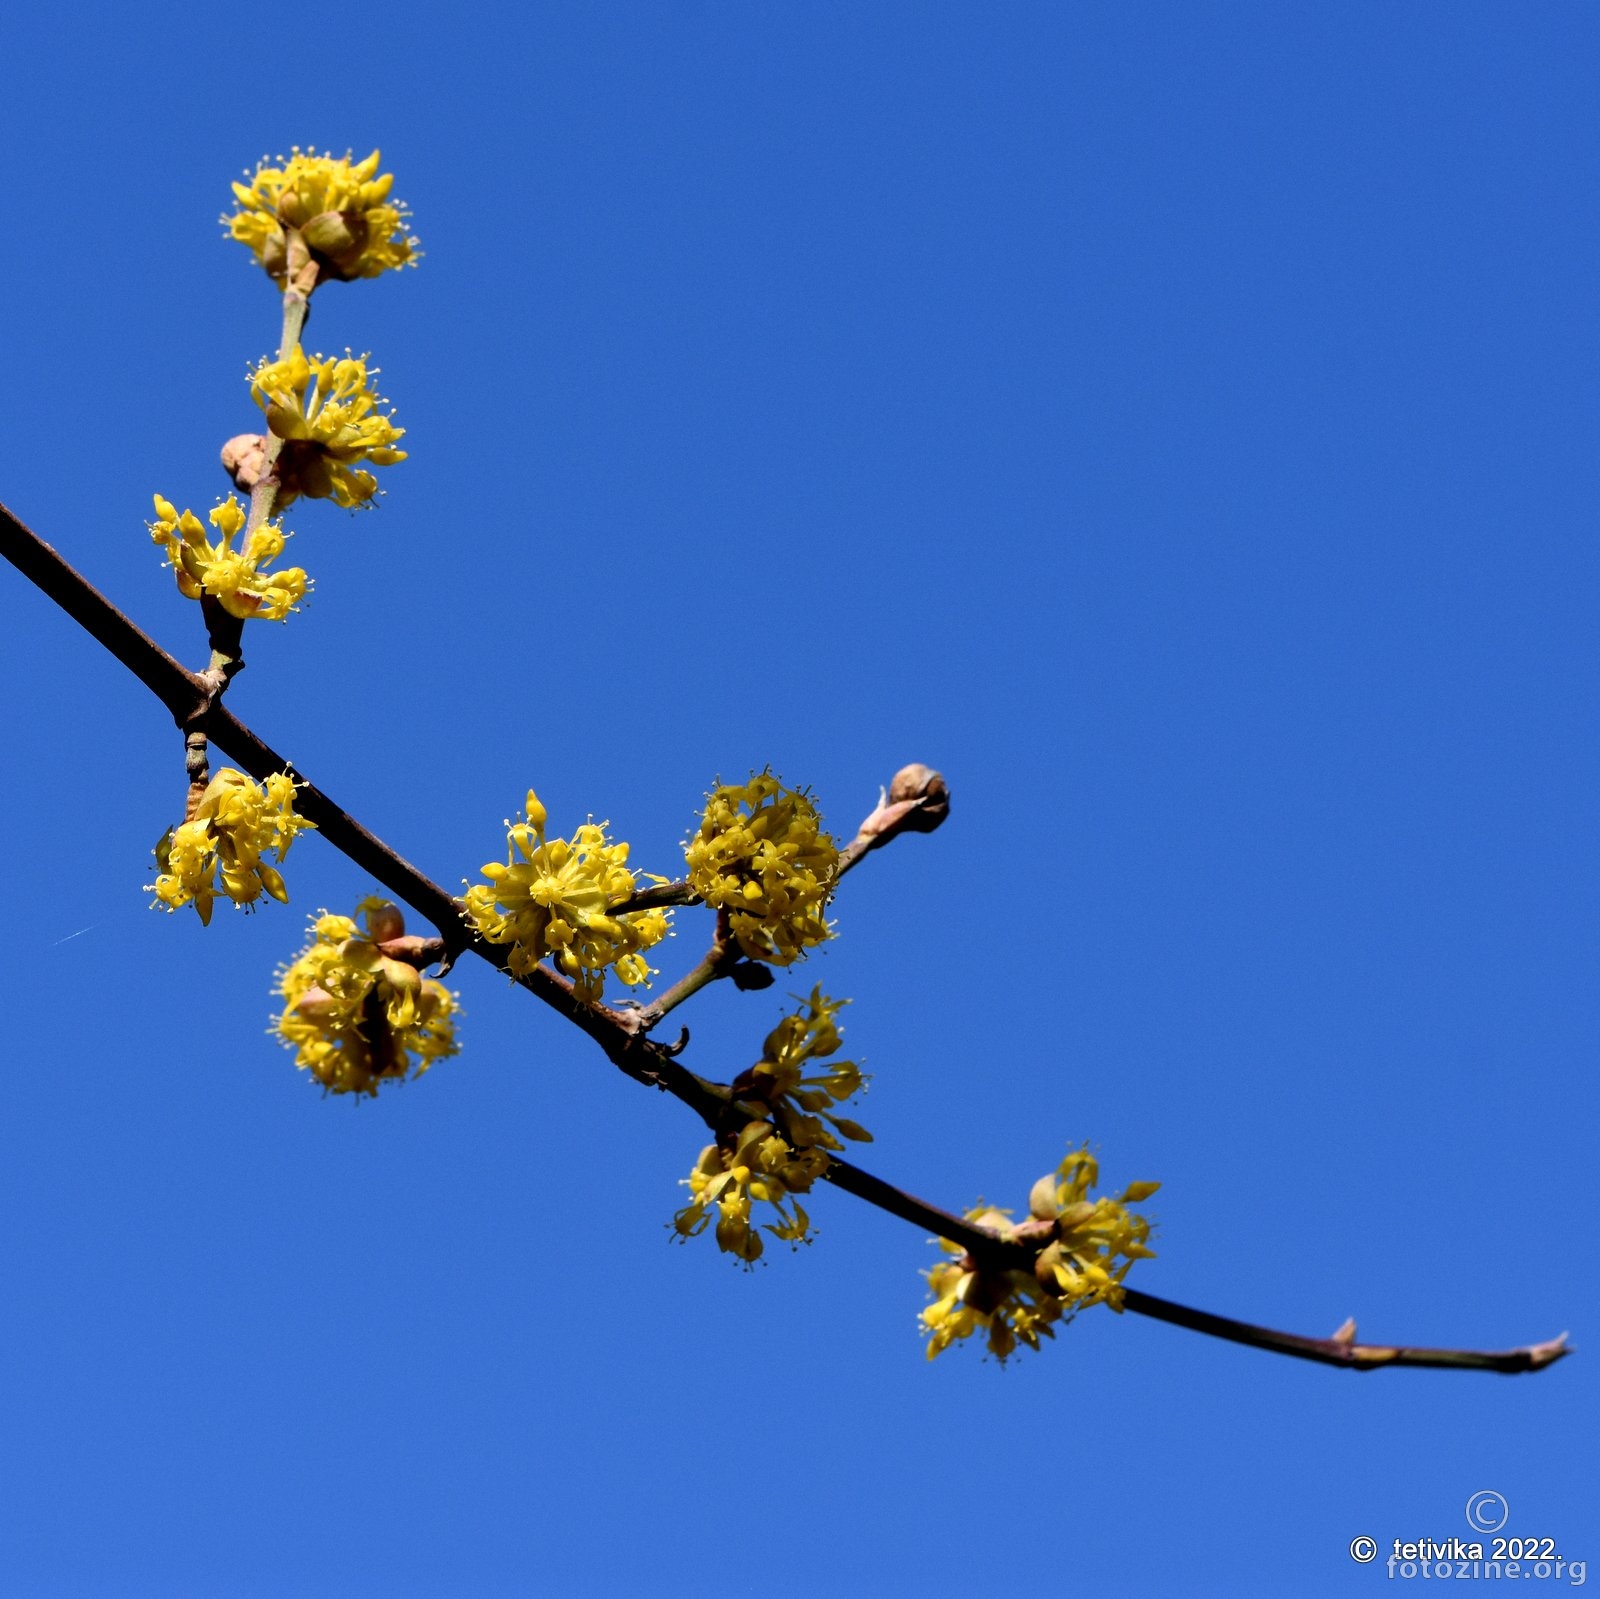 Dok još zima vlada svijetom, drijen procvjeta žutim cvjetom.